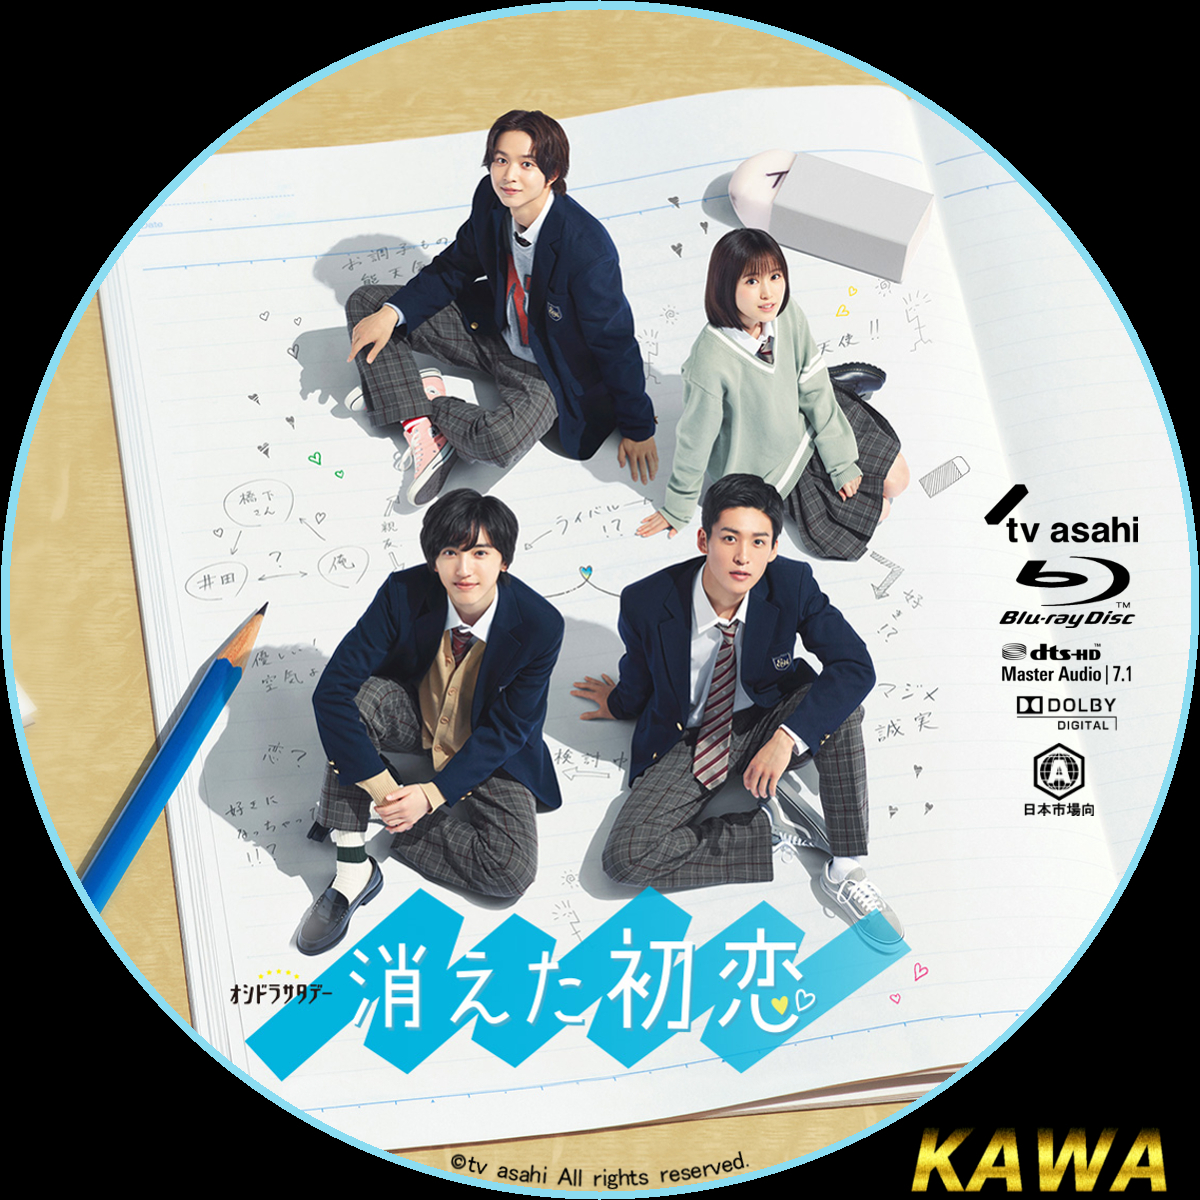 消えた初恋 Blu-ray BOX〈4枚組〉 初回生産限定盤 売れ筋がひ！ - 邦画 